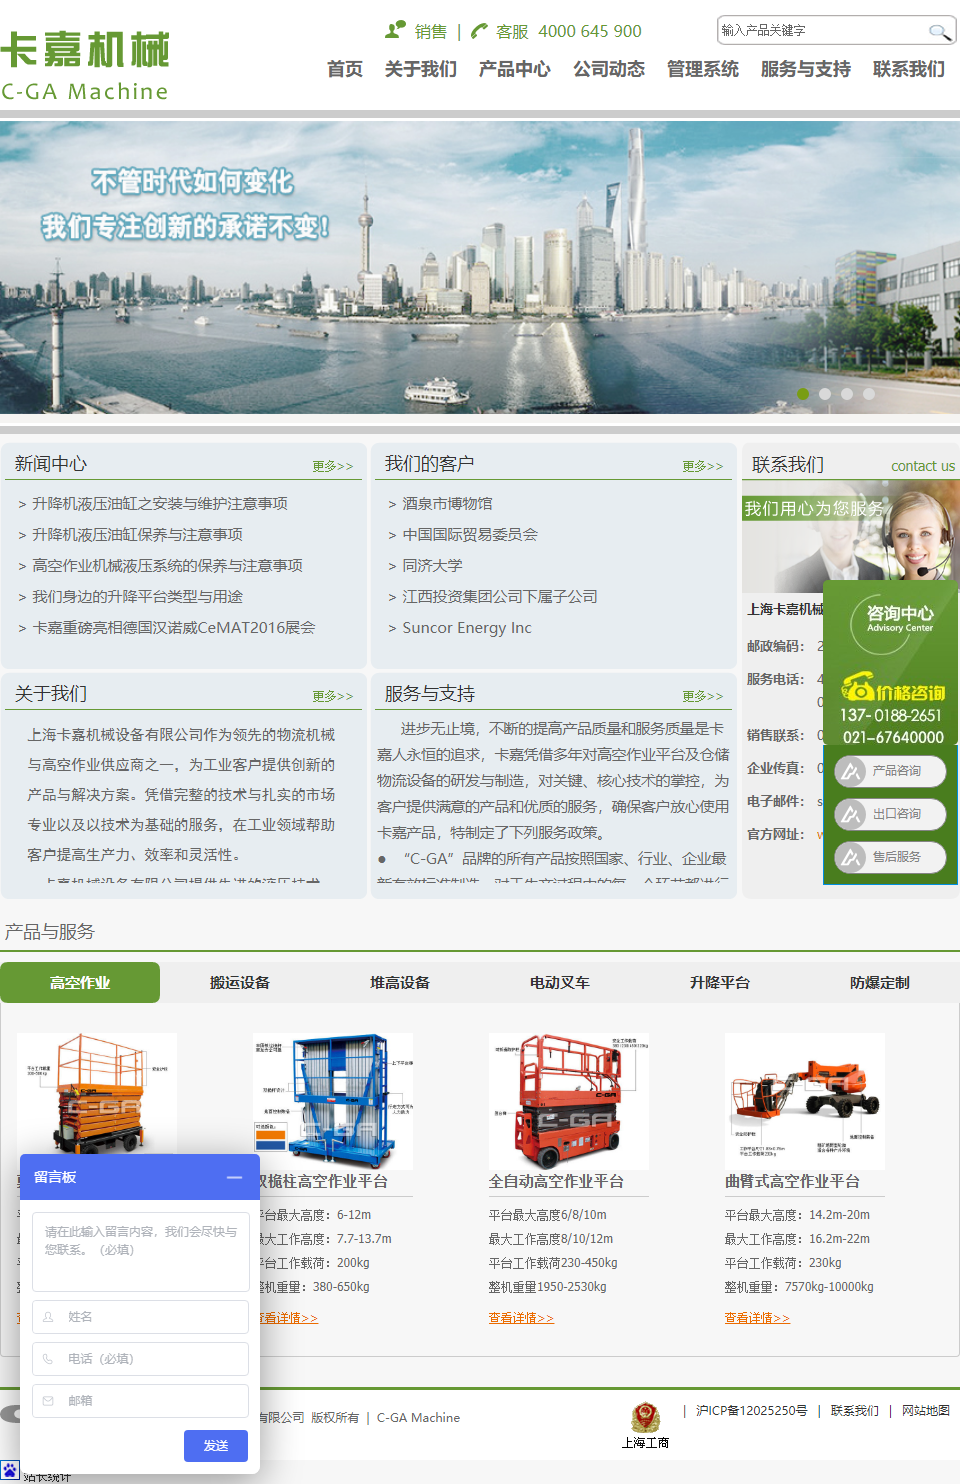 上海卡嘉机械设备有限公司网站案例